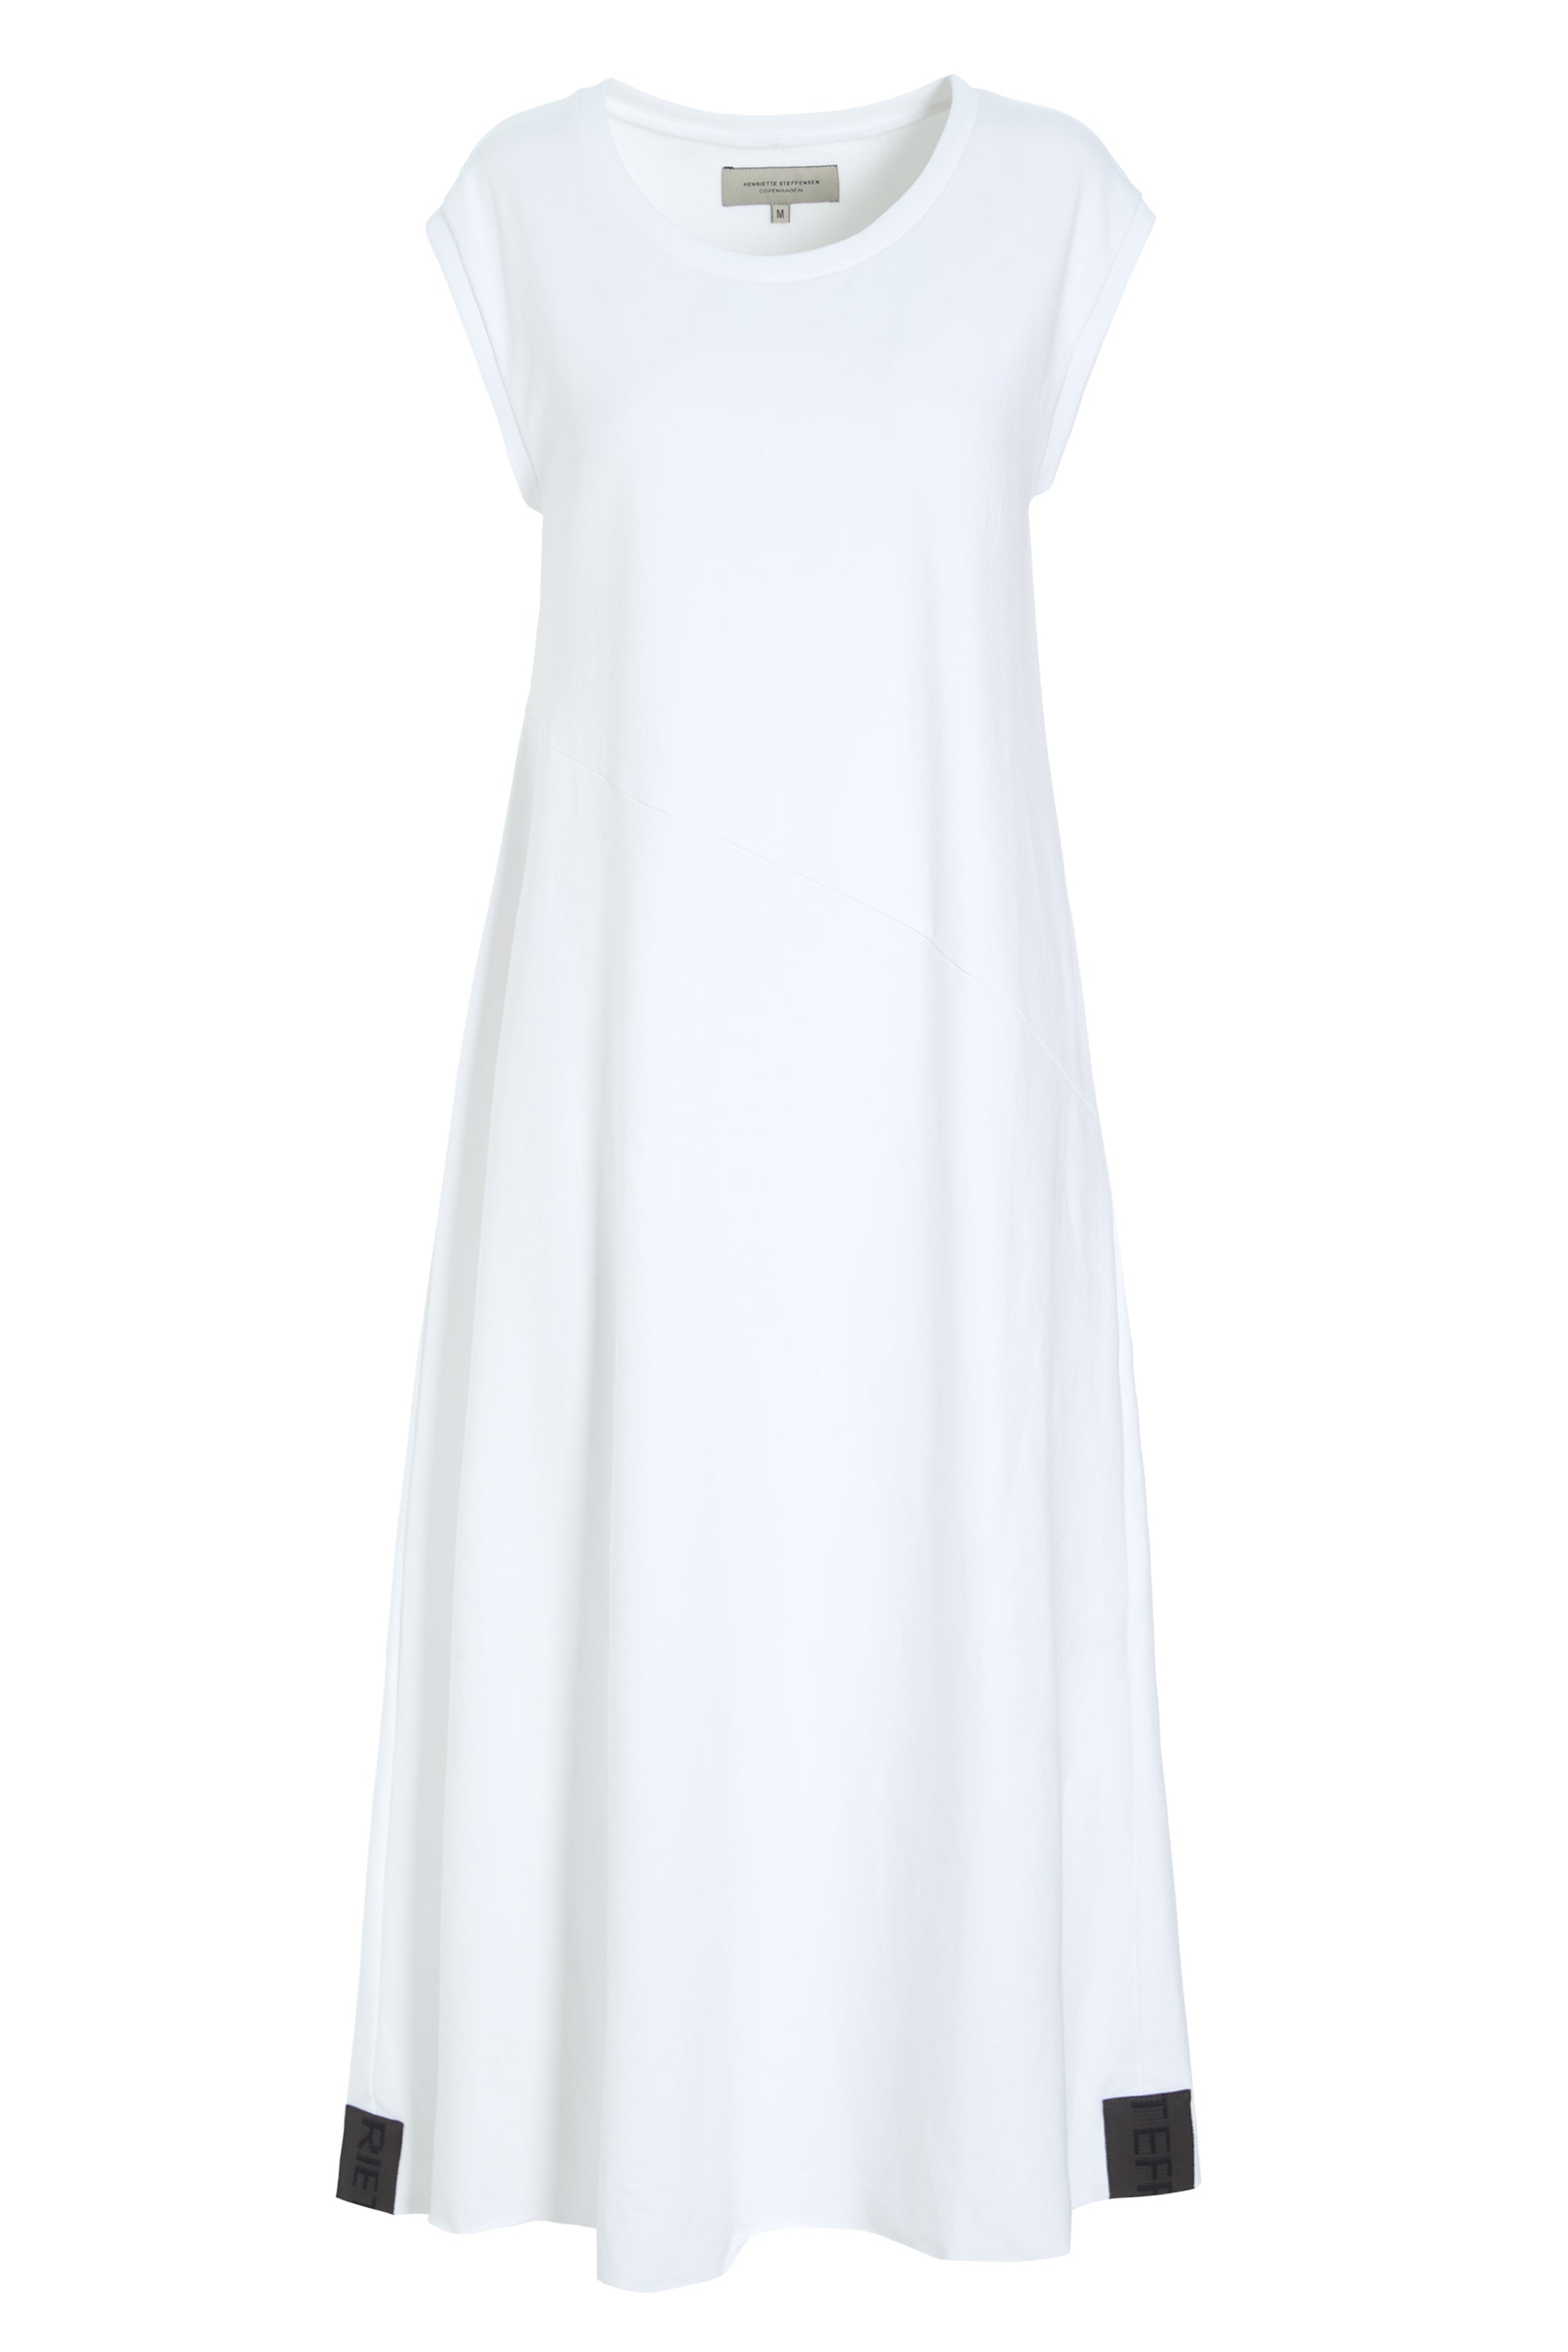 HENRIETTE STEFFENSEN COPENHAGEN SWEAT KJOLE - 73405 DRESS cotton WHITE 816